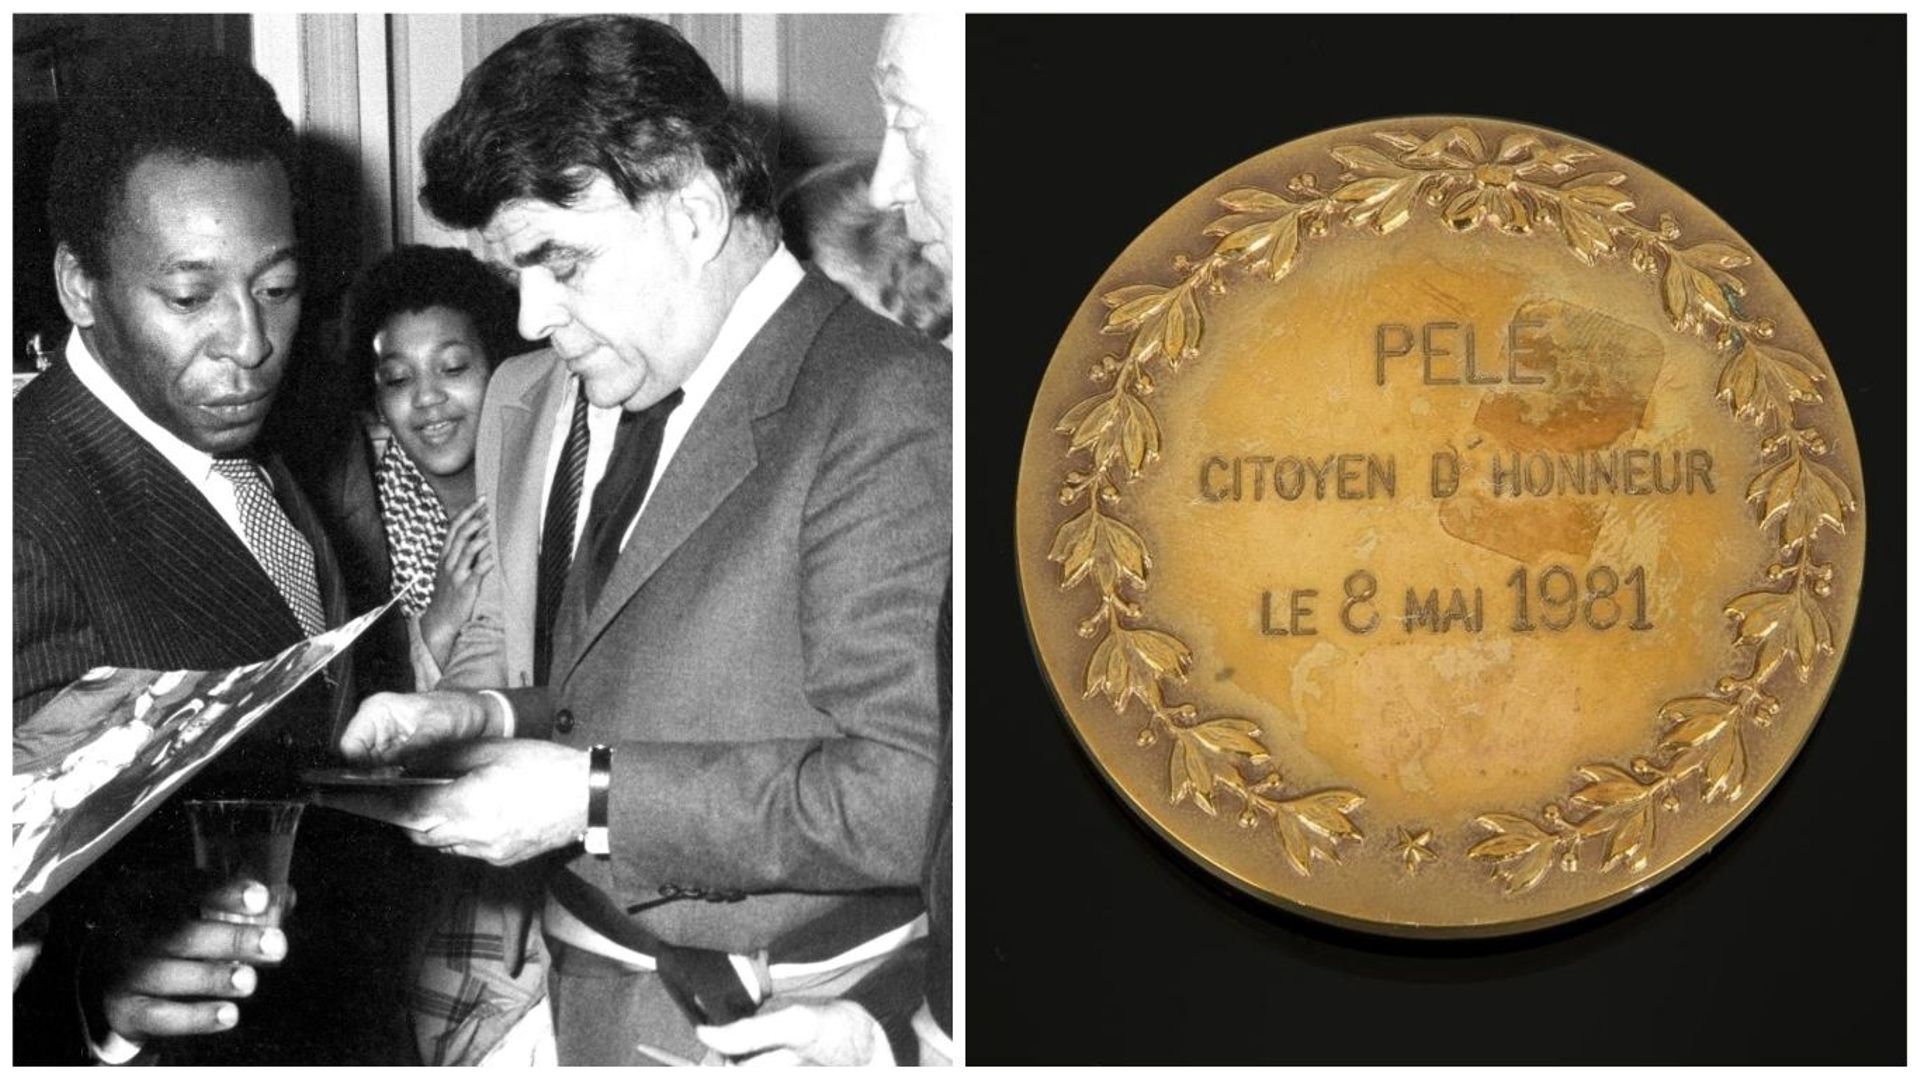 Pelé avec le bourgmestre de Saint-Josse Guy Cudell. A droite, sa médaille de citoyen d’honneur de la commune.